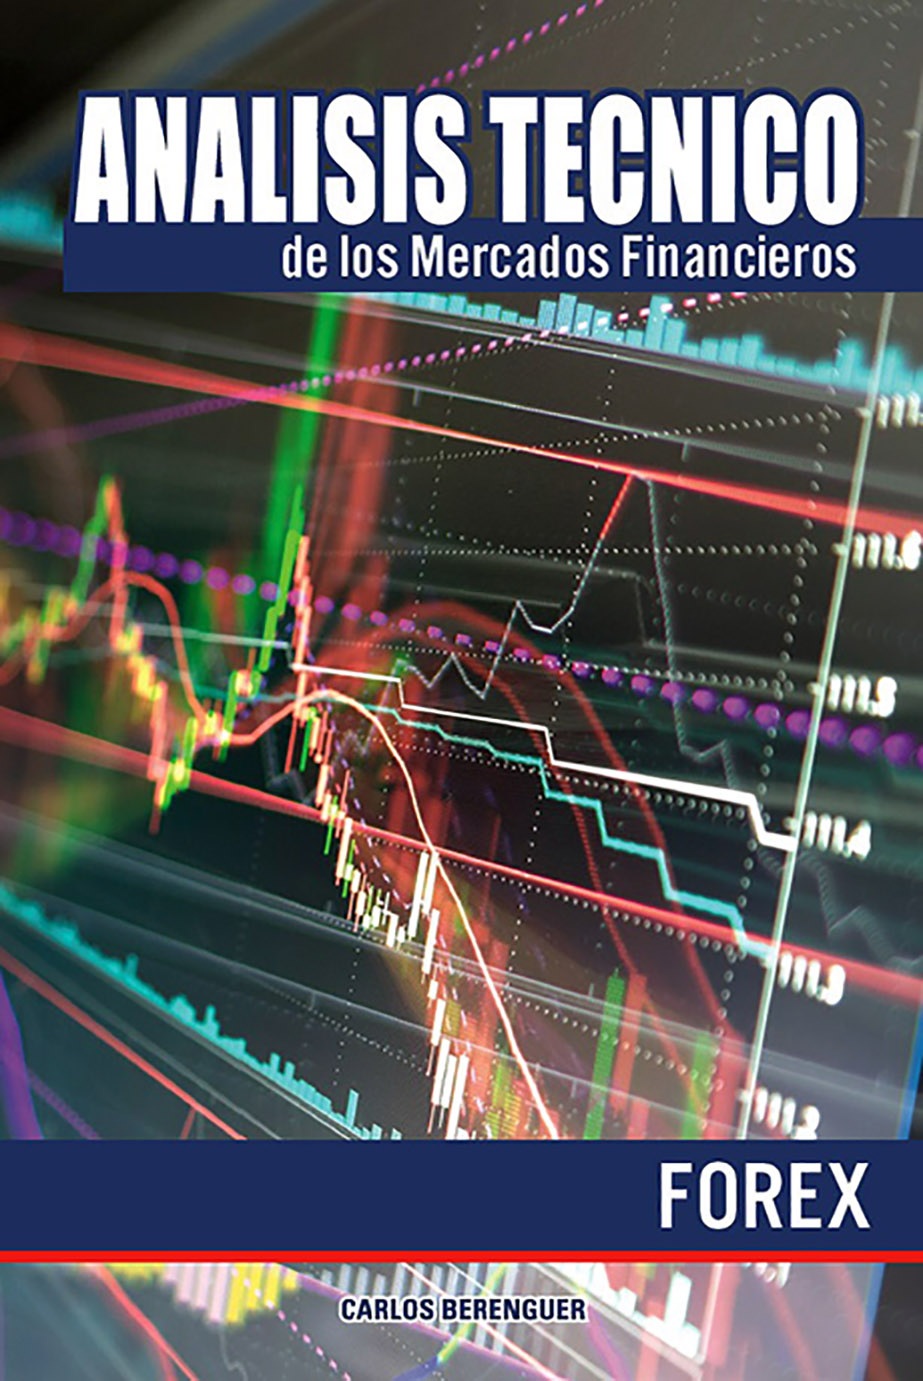 Análisis Técnico de los Mercados Financieros: Forex main image